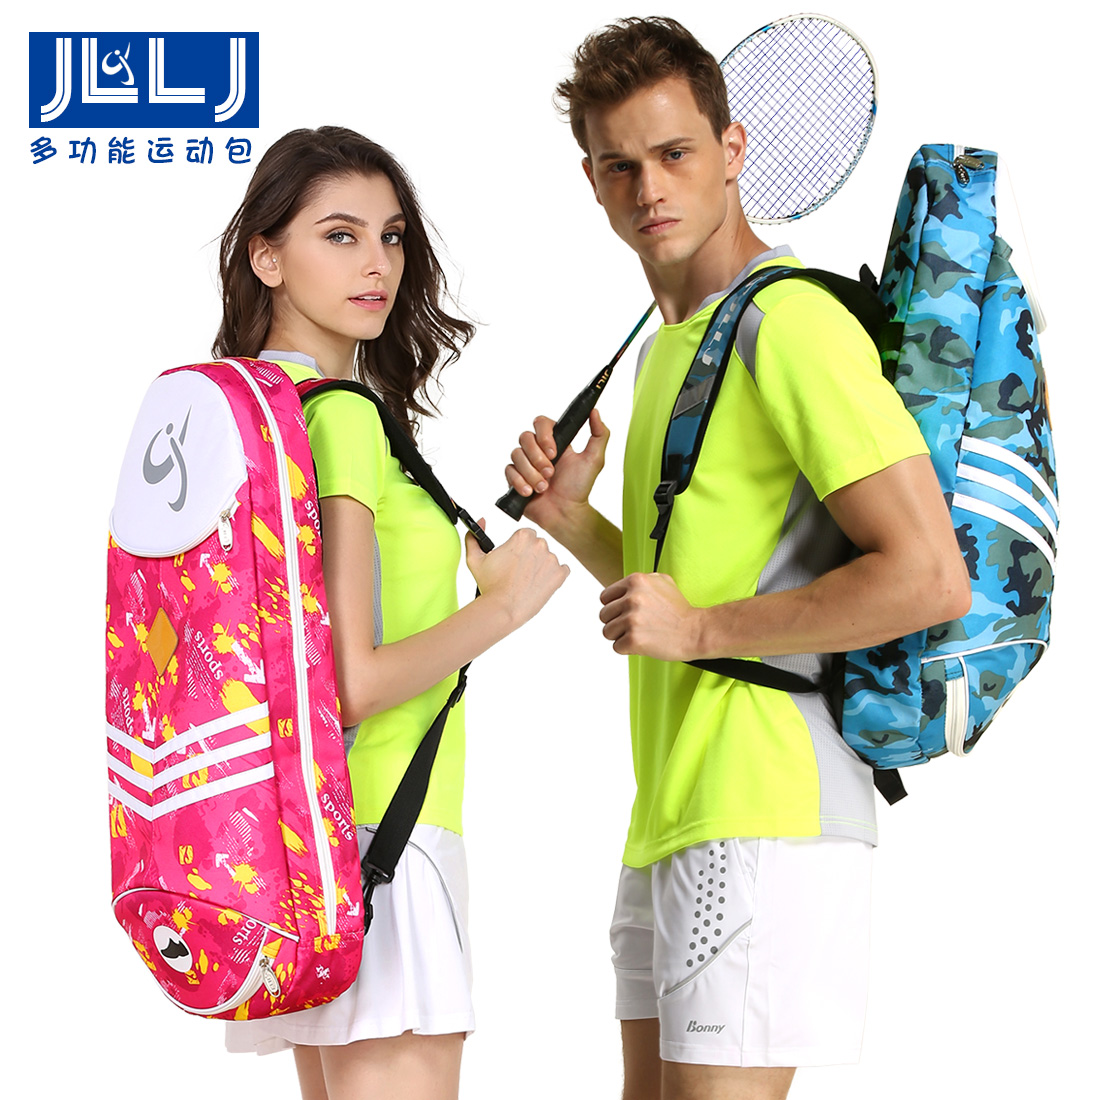 时尚JLLJ正品3支装羽毛球包单肩背包网球包男女儿童成人小型实用